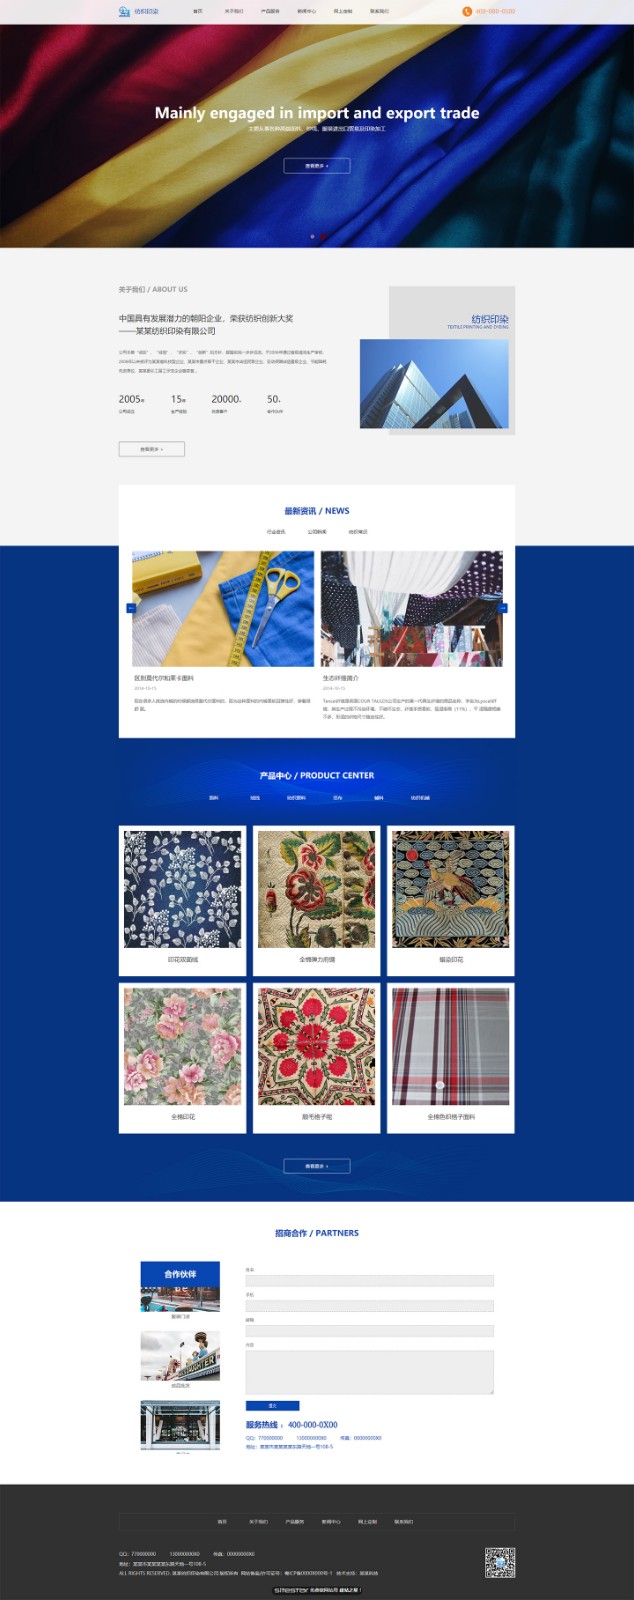 企业网站精美模板-textile-1110538